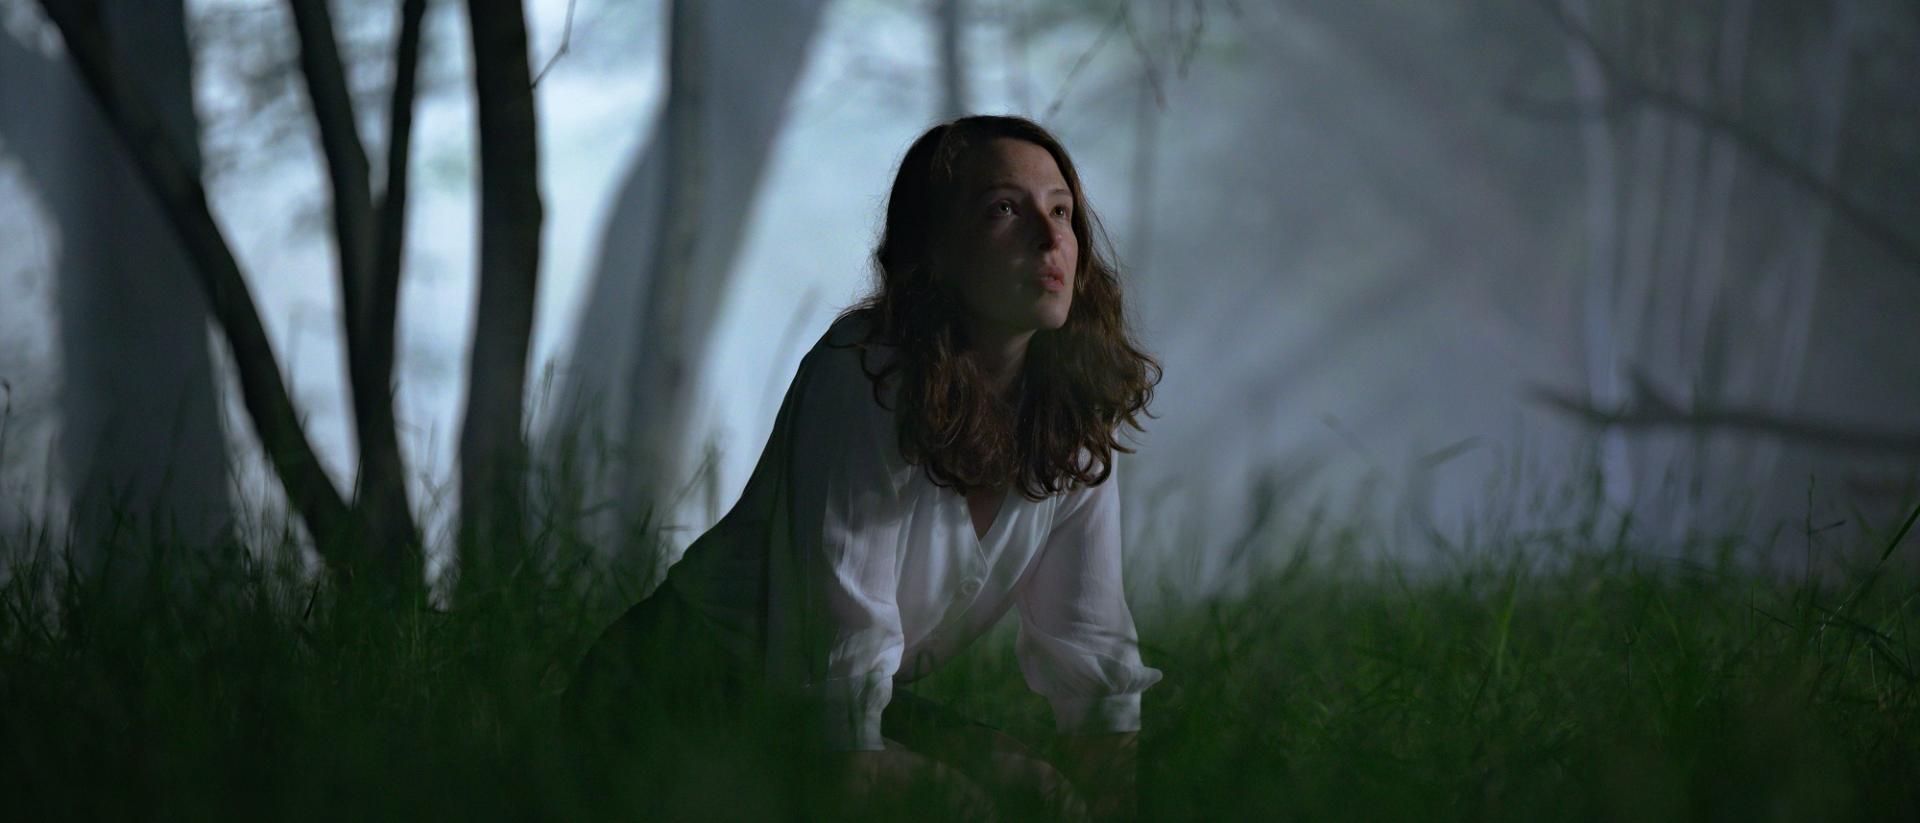 still from gwledd featuring annes elwy wearing a white shirt kneeling in a dark forest